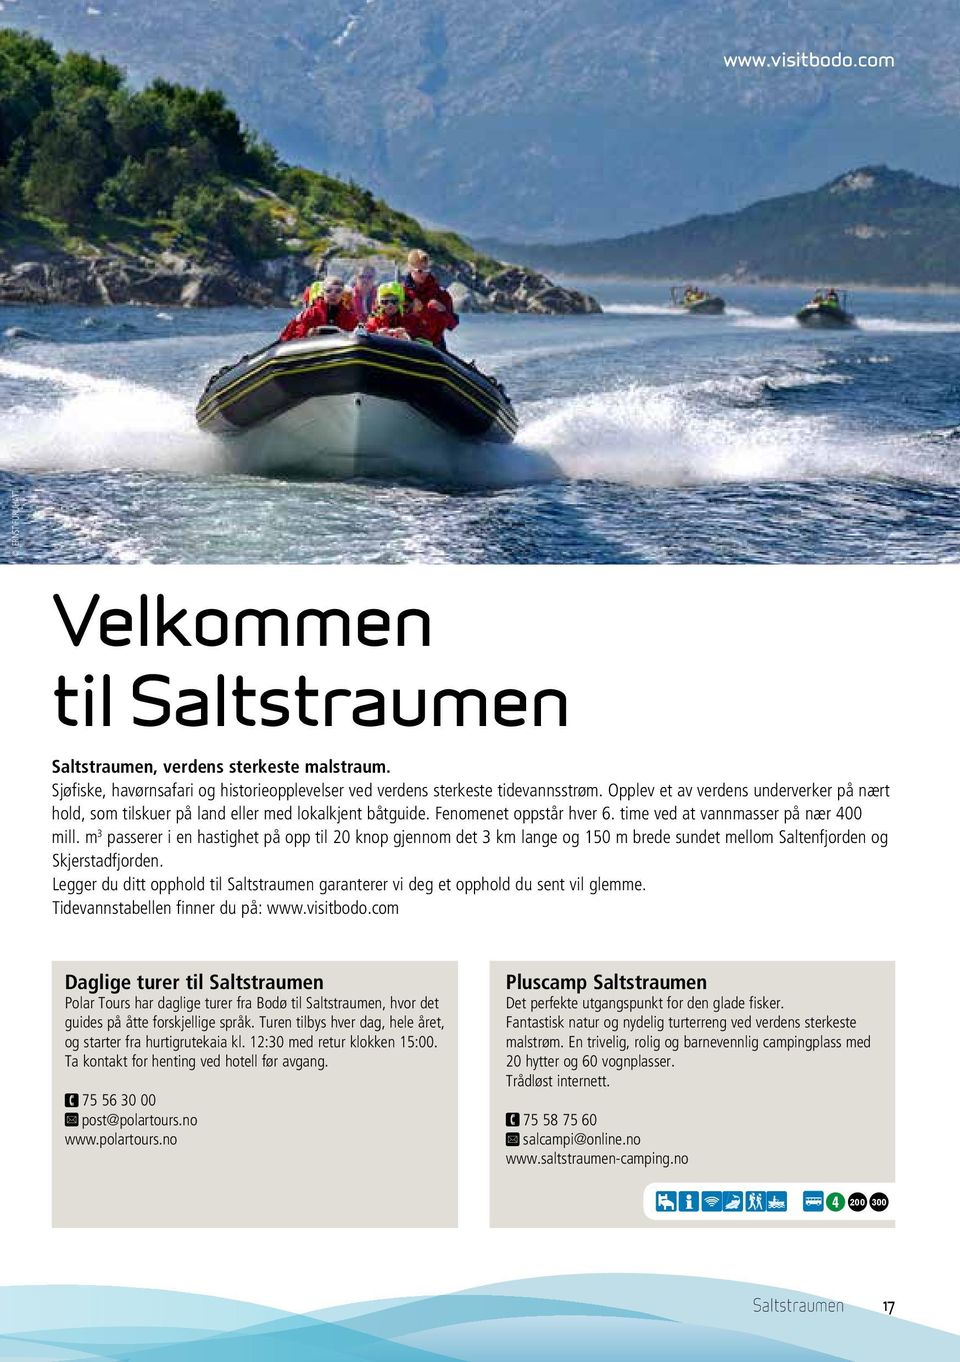 m 3 passerer i e hastighet på opp til 20 kop gjeom det 3 km lage og 150 m brede sudet mellom Saltefjorde og Skjerstadfjorde.